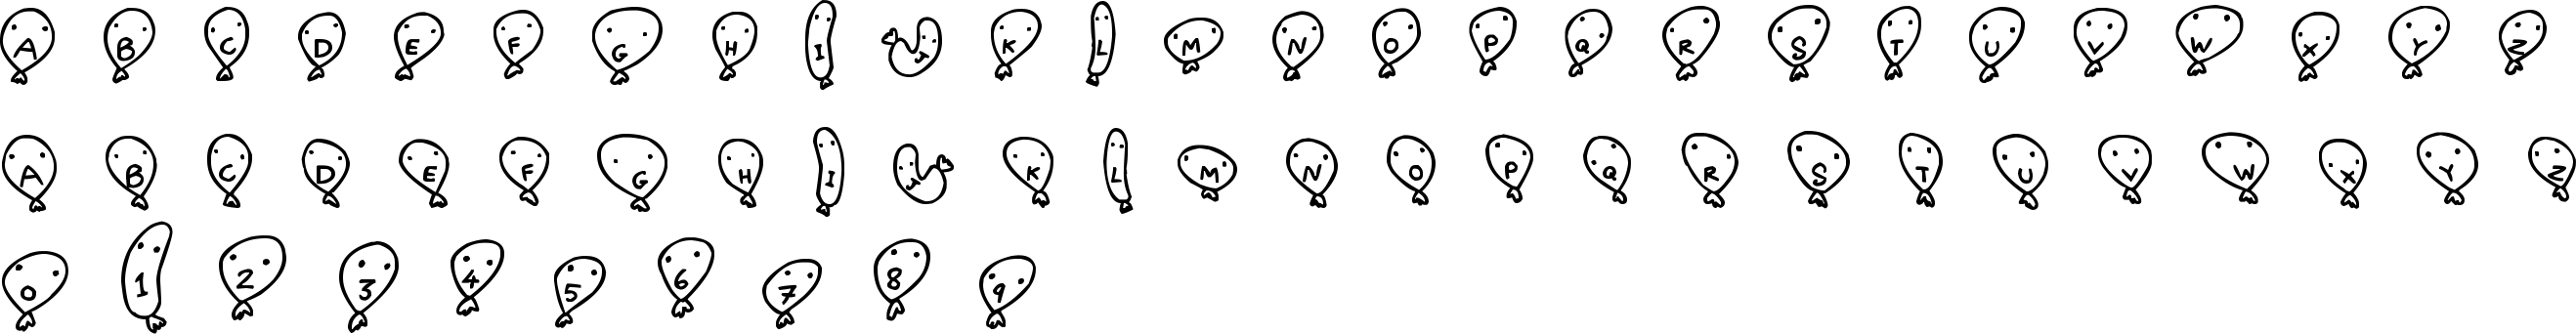 Balloon Friends Font Character Map